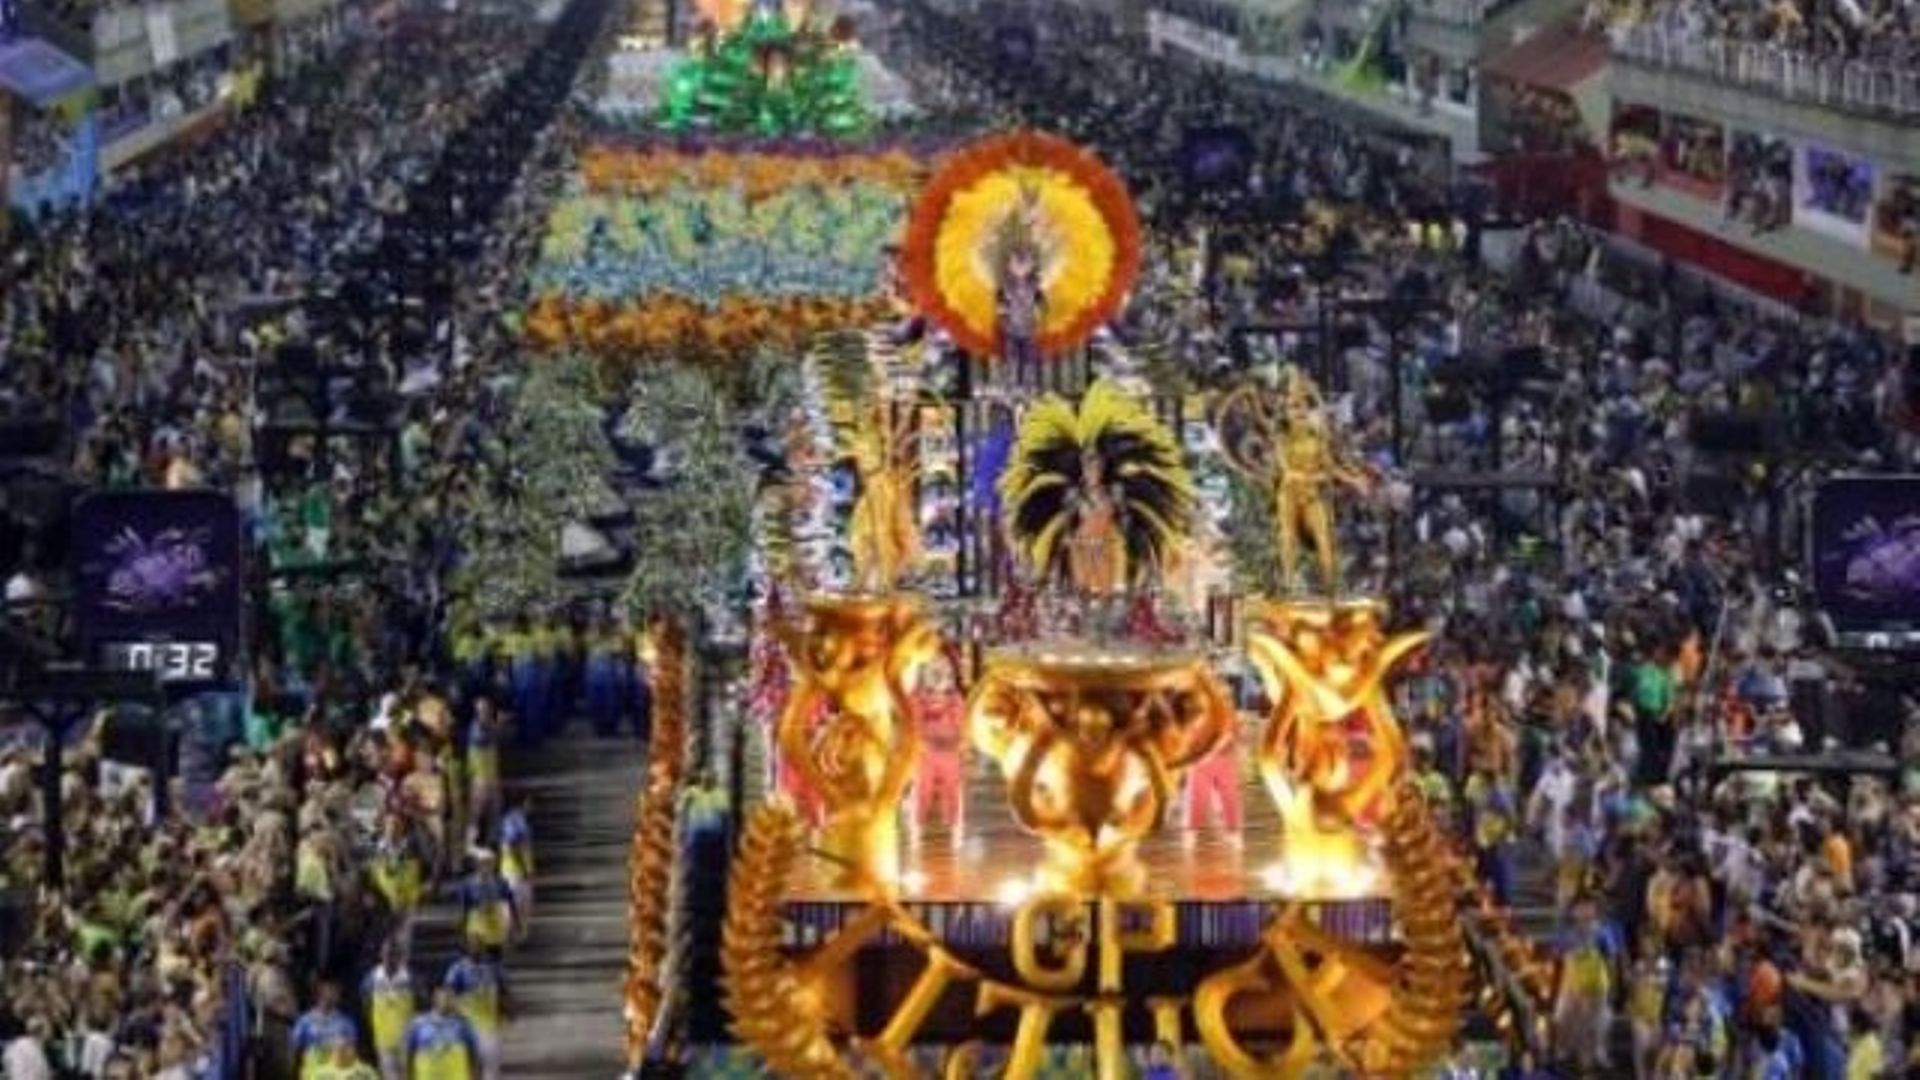 Carnaval de Rio: l'école Unidos da Tijuca championne avec hommage à Senna